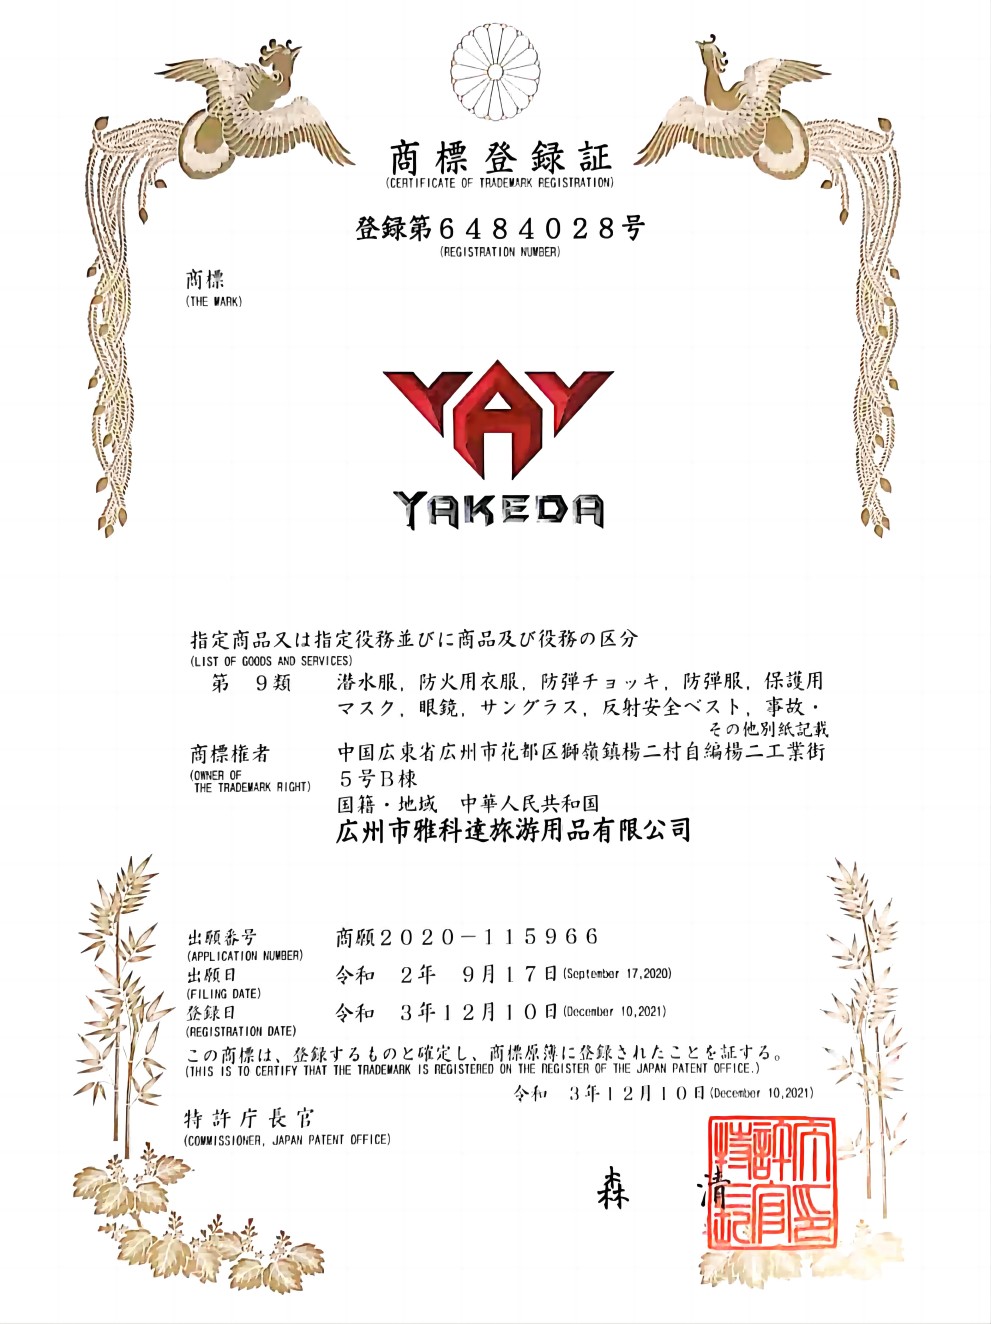 Сертификат товарного знака Японии